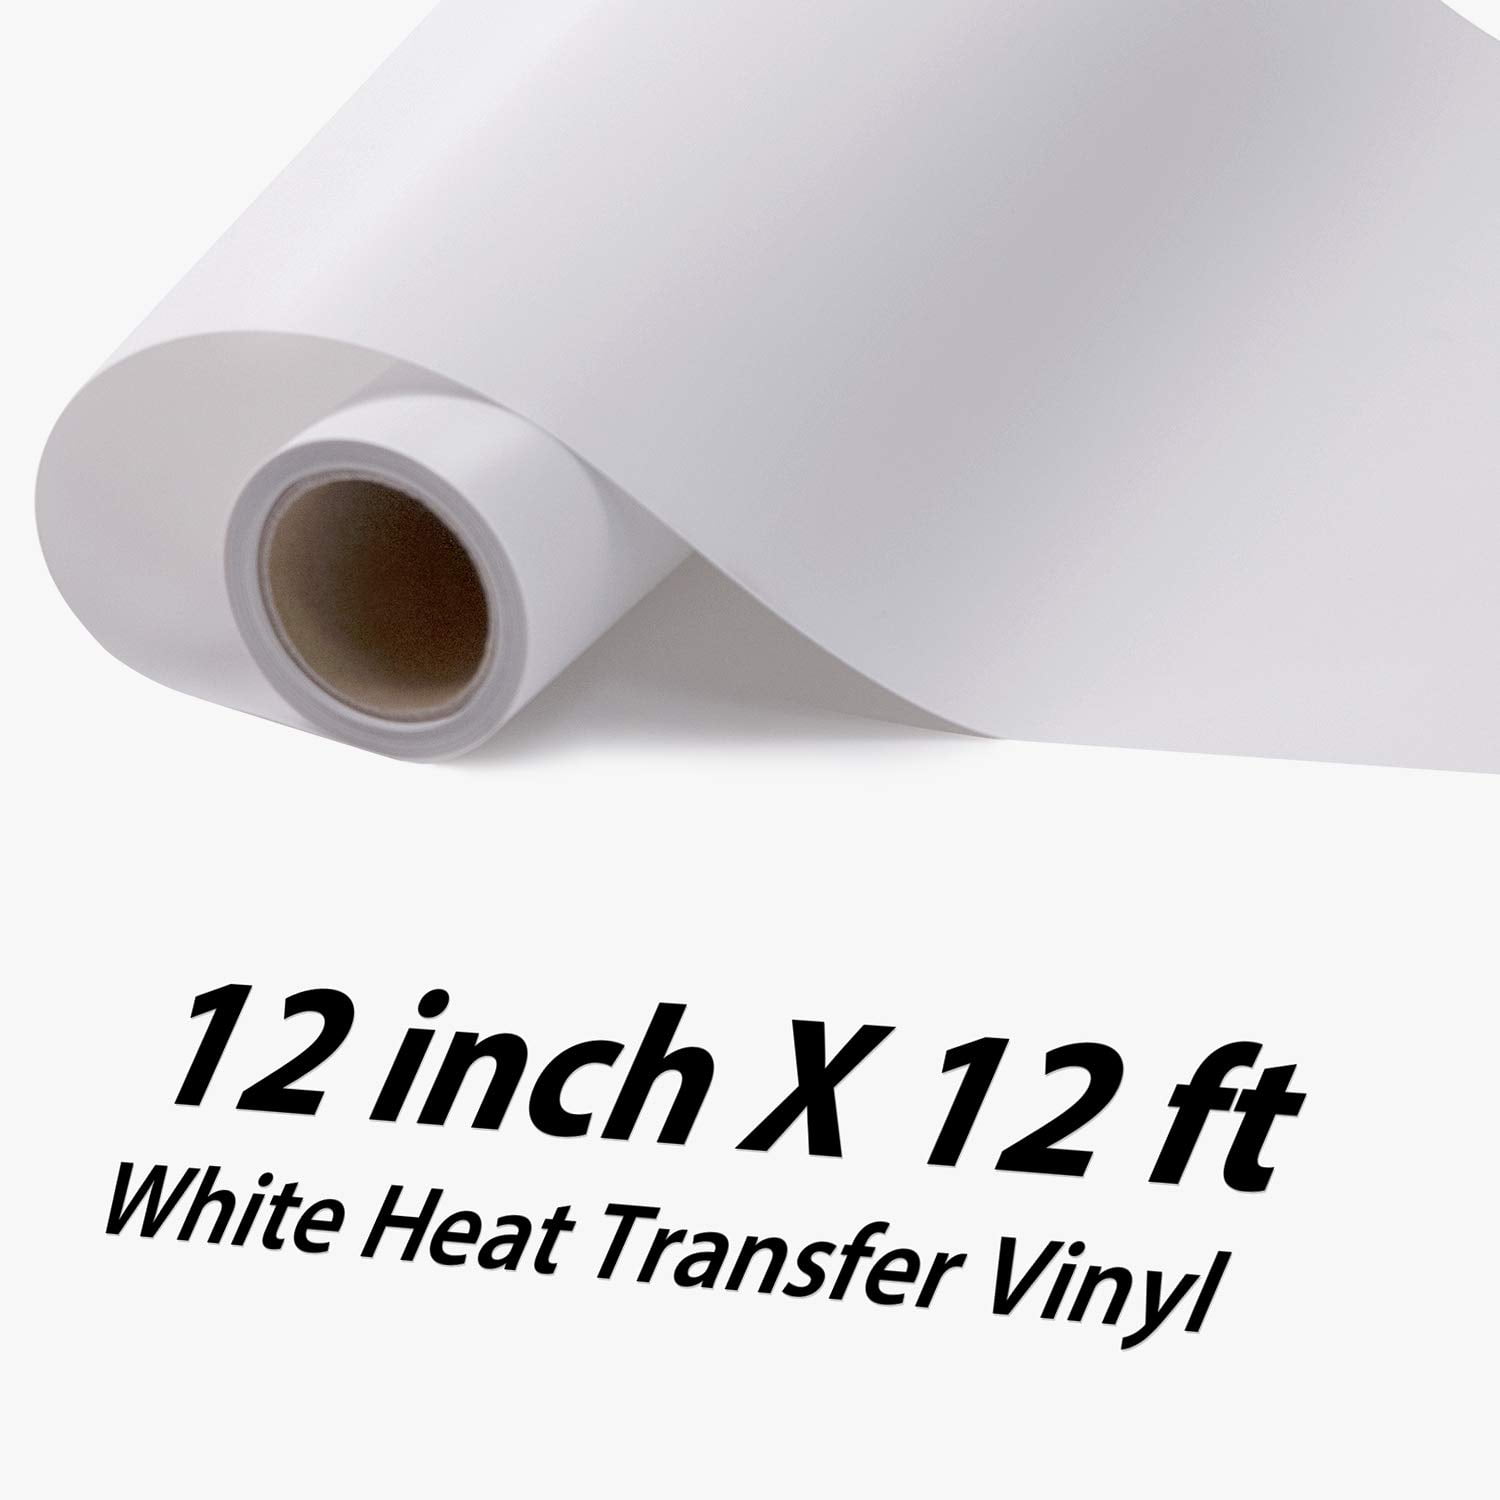 VINYL FROG White Heat Transfer Vinyl Rolls, 12x25ft White Iron on Vinyl  for Cricut & Cameo, White HTV Vinyl Roll for All Cutter Machine, Easy to  Cut